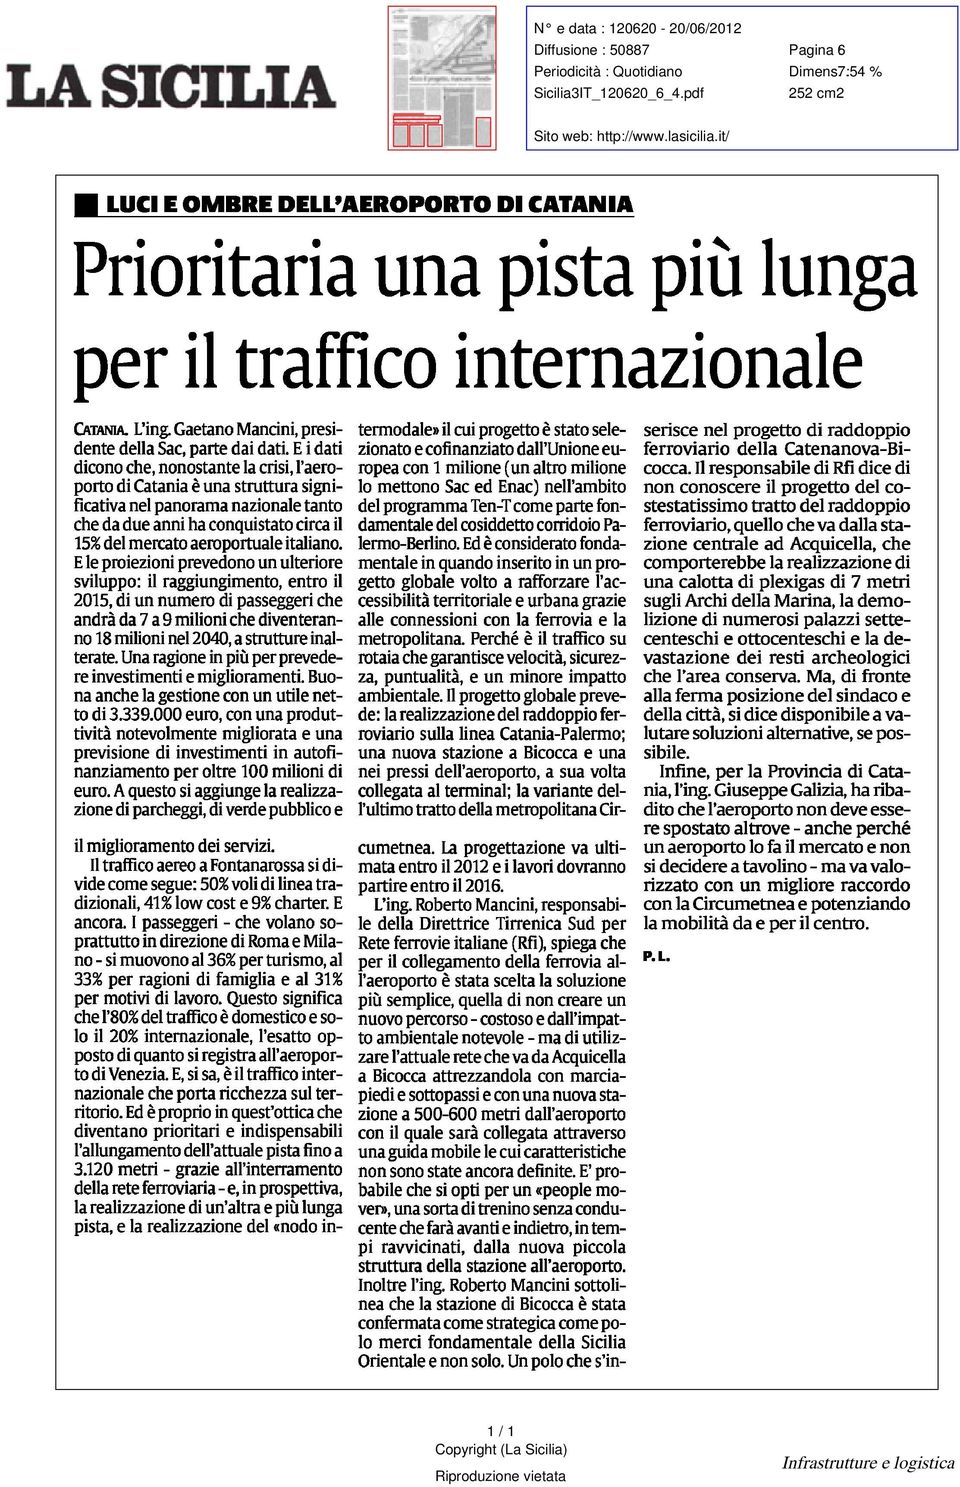 del Sac parte dai dati i dati dicono che nonostante crisi l aeroporto di Catania è una struttura significativa nel panorama nazionale tanto che da due anni ha conquistato circa il 15%% del mercato